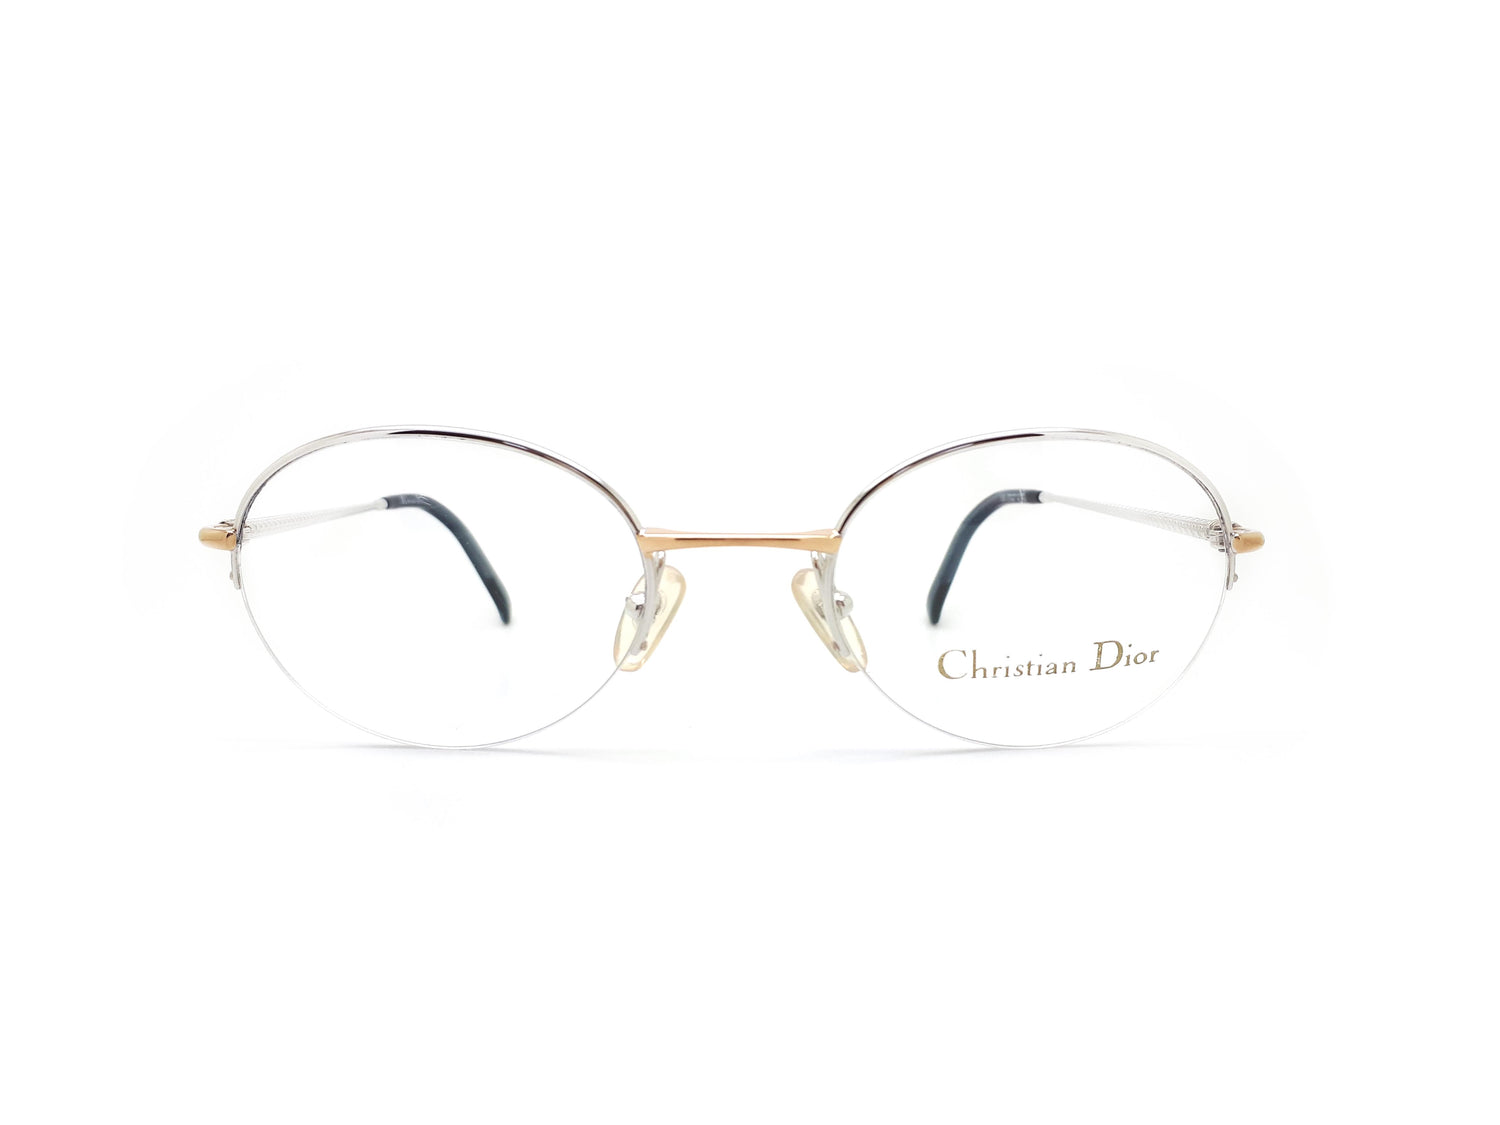 Vintage Christian Dior 1980s Eyeglasses Frames 2035 No Lens  Black Dog  Vintage